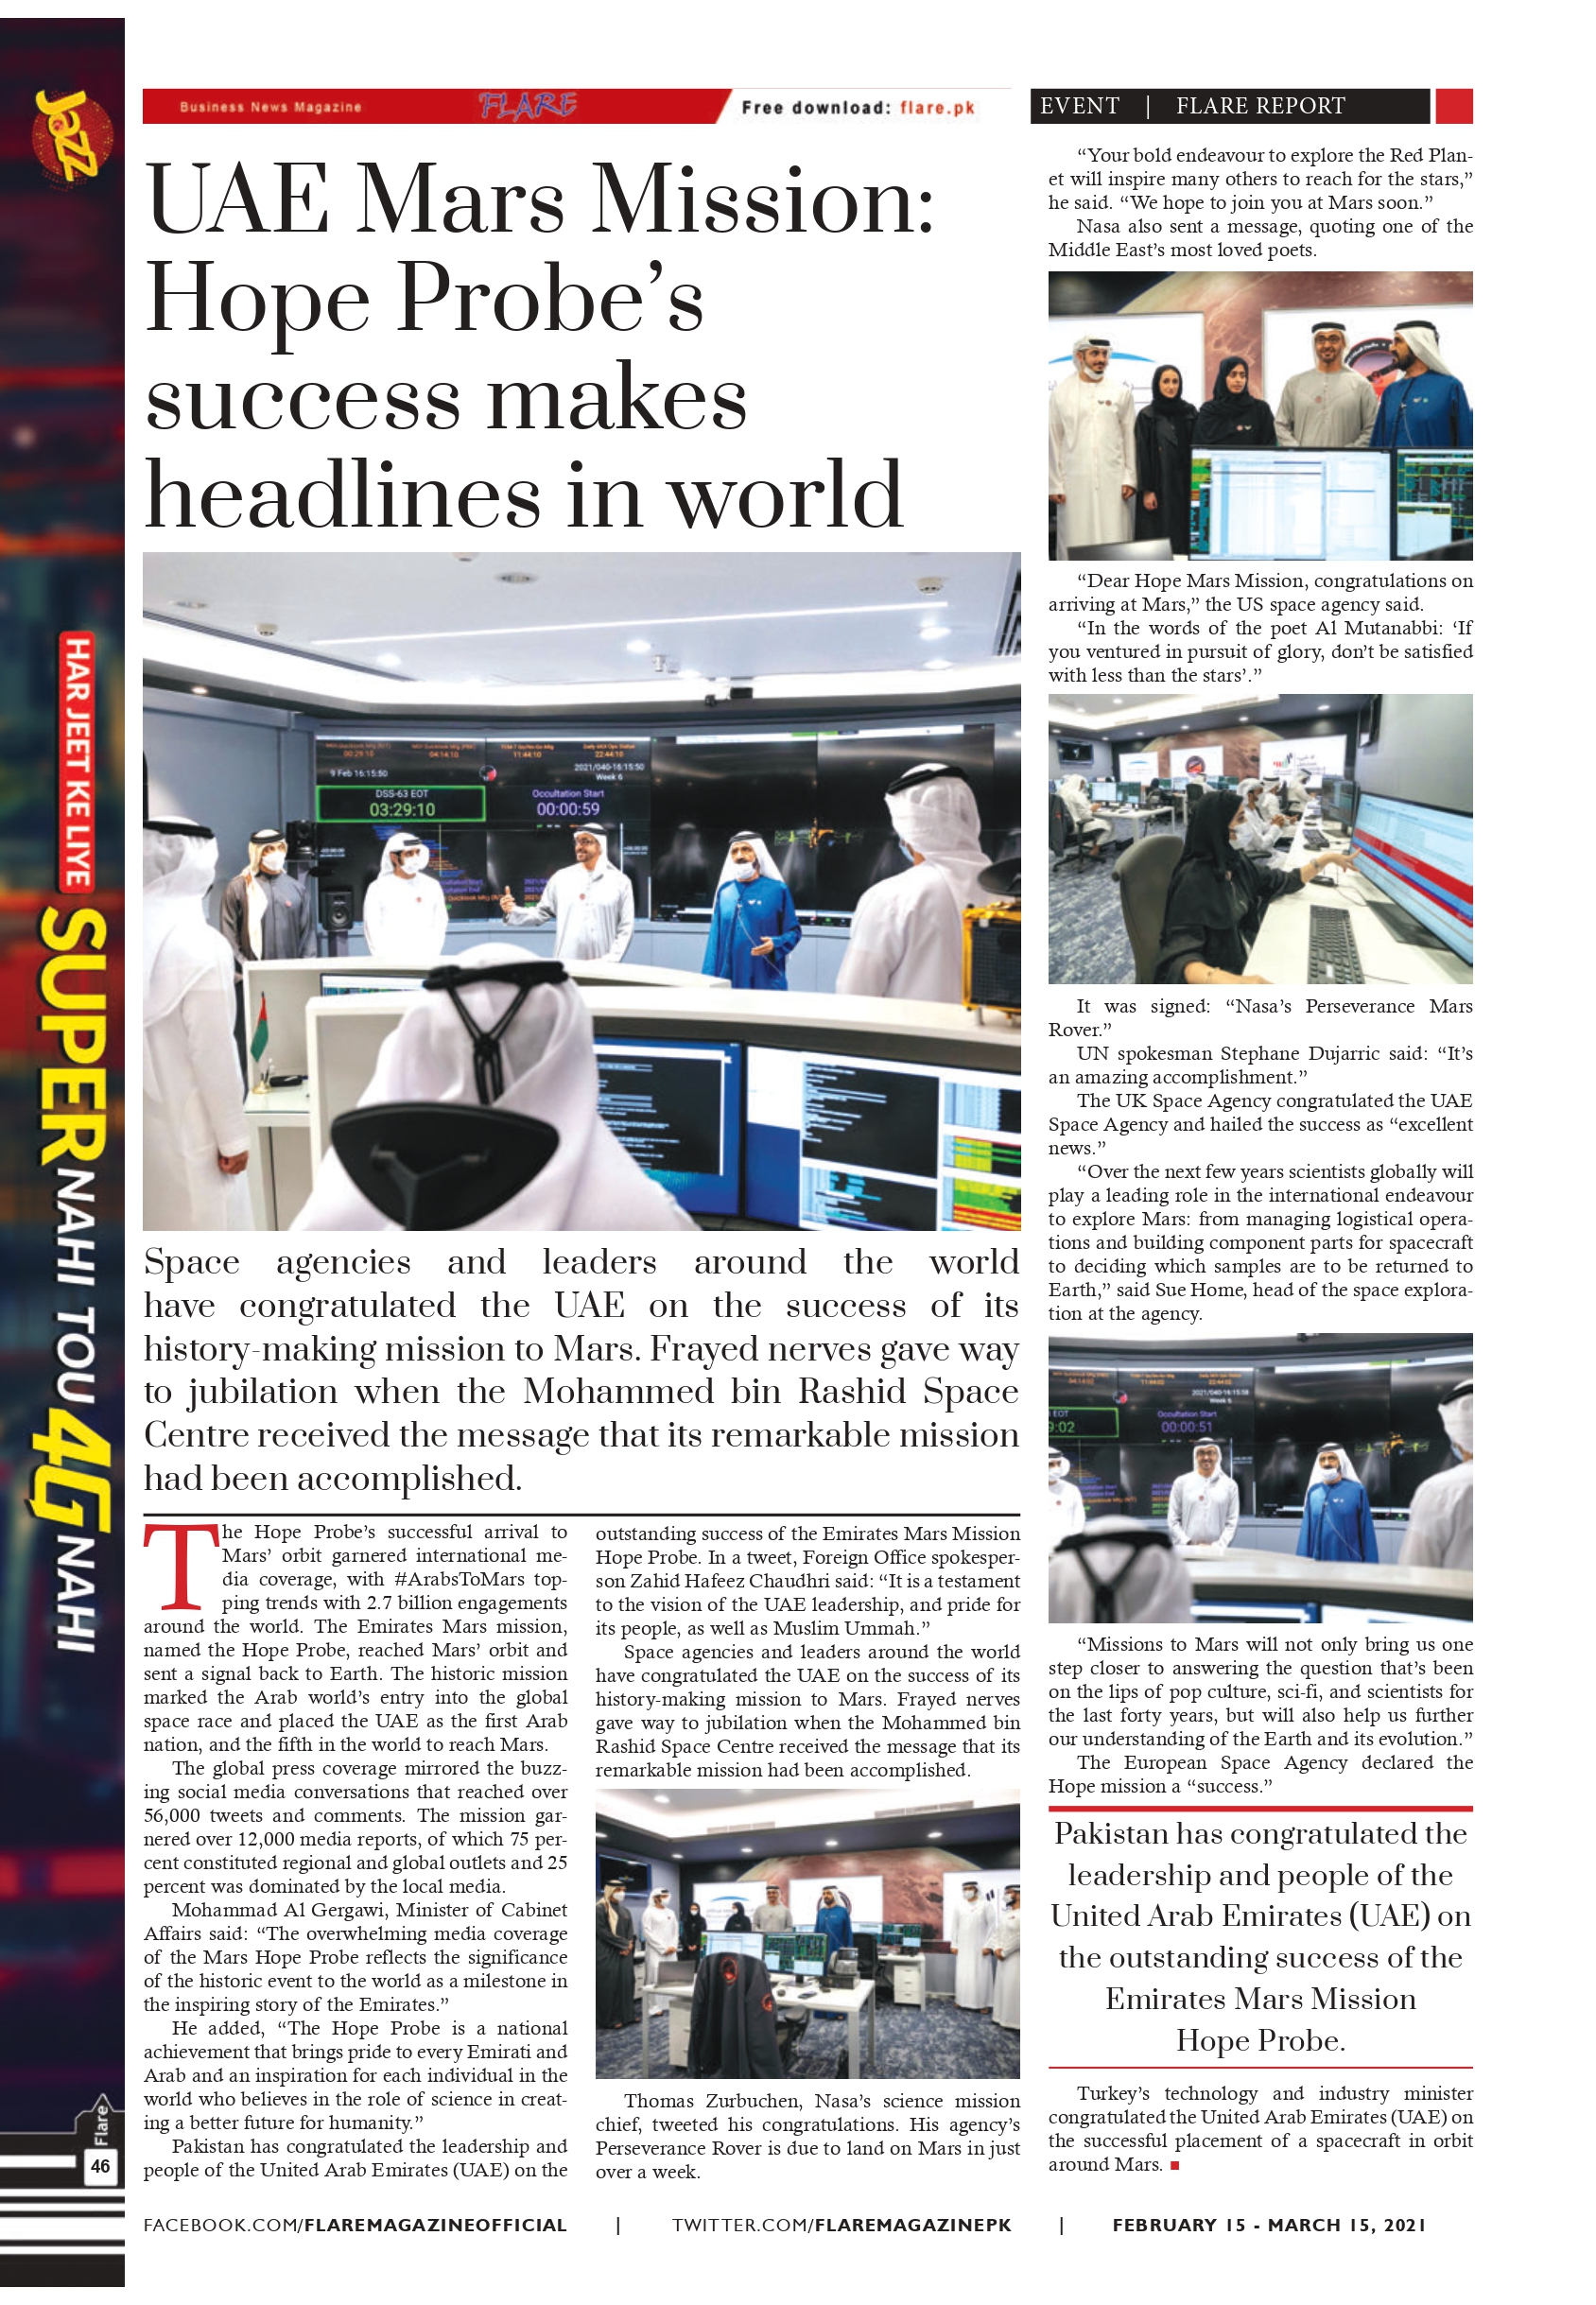 UAE Mars Mission: Hope Probe’s success makes headlines in world